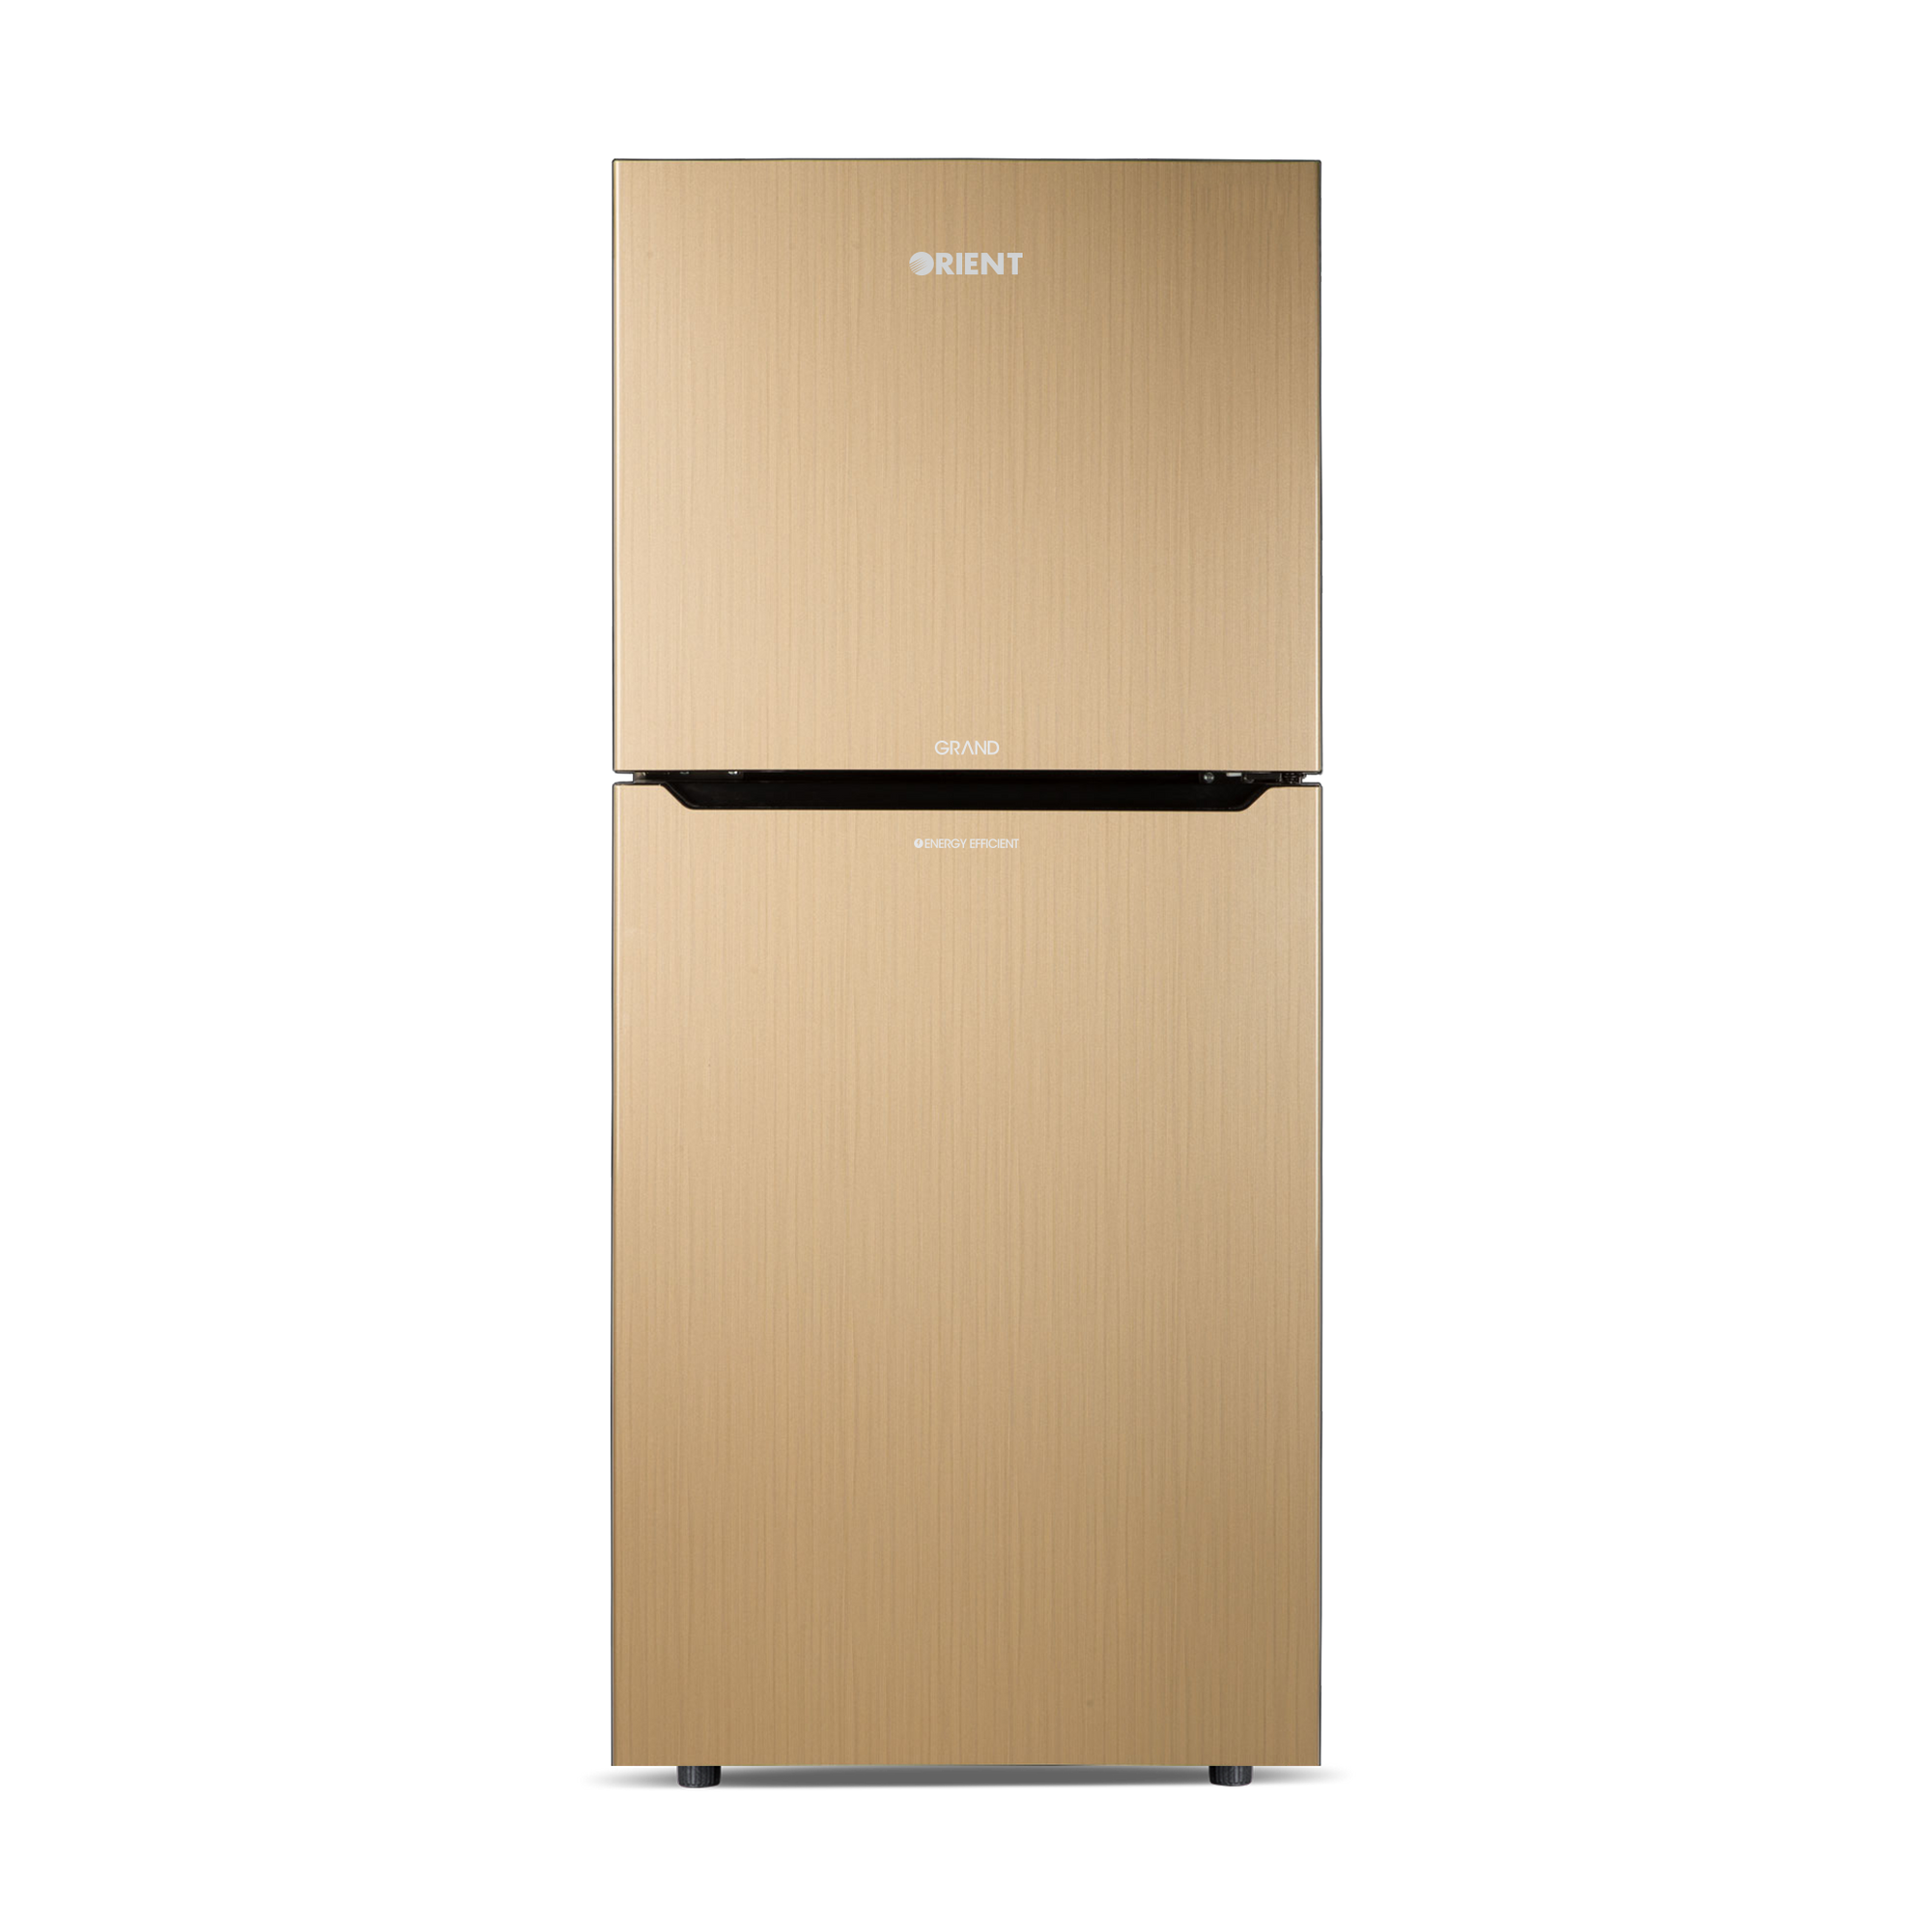 Orient Refrigerator Double Door - 385H Grand VCM